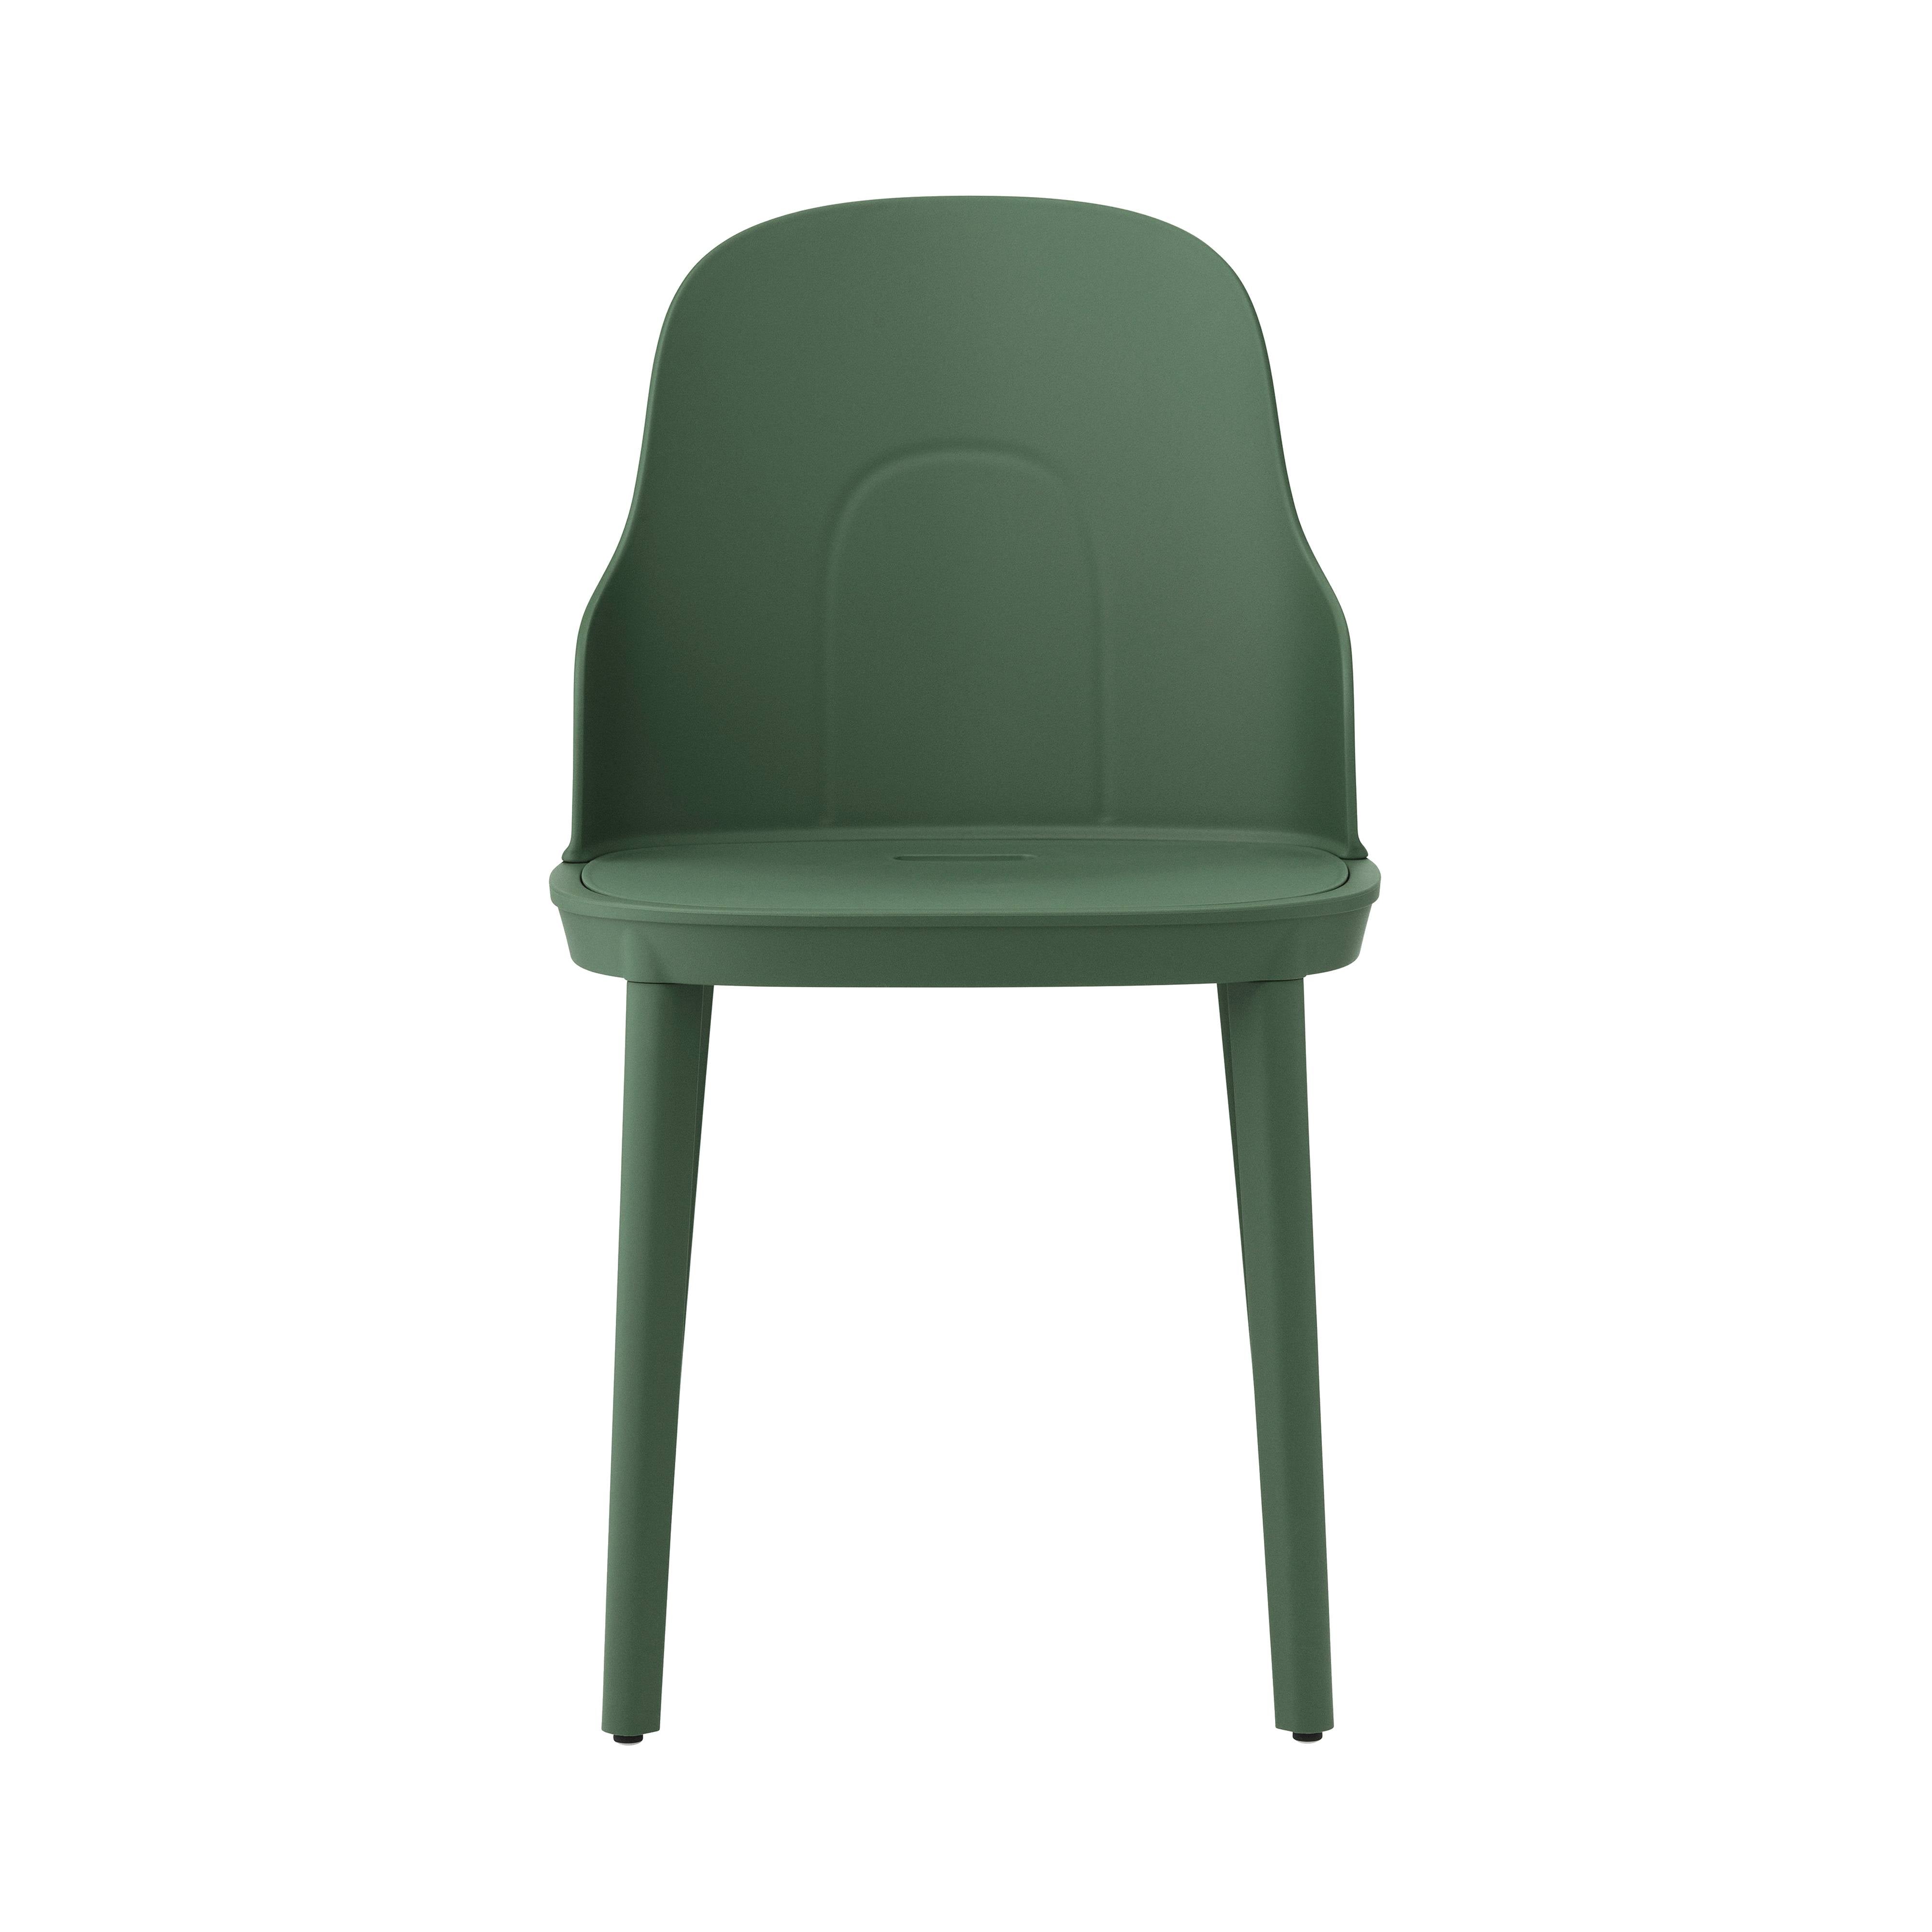 Allez Chair: Park Green + Polypropylene